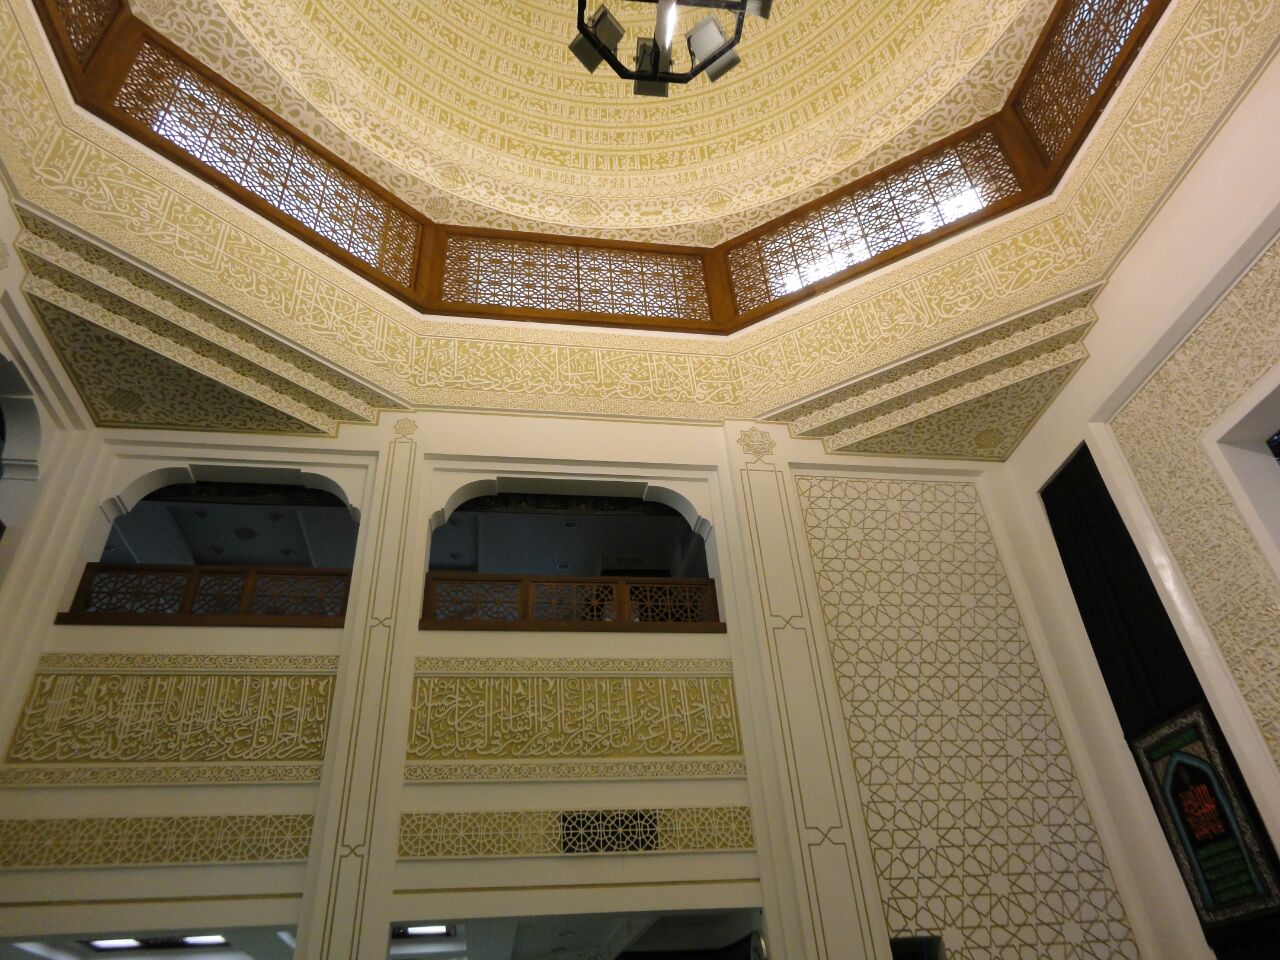 Mosque design